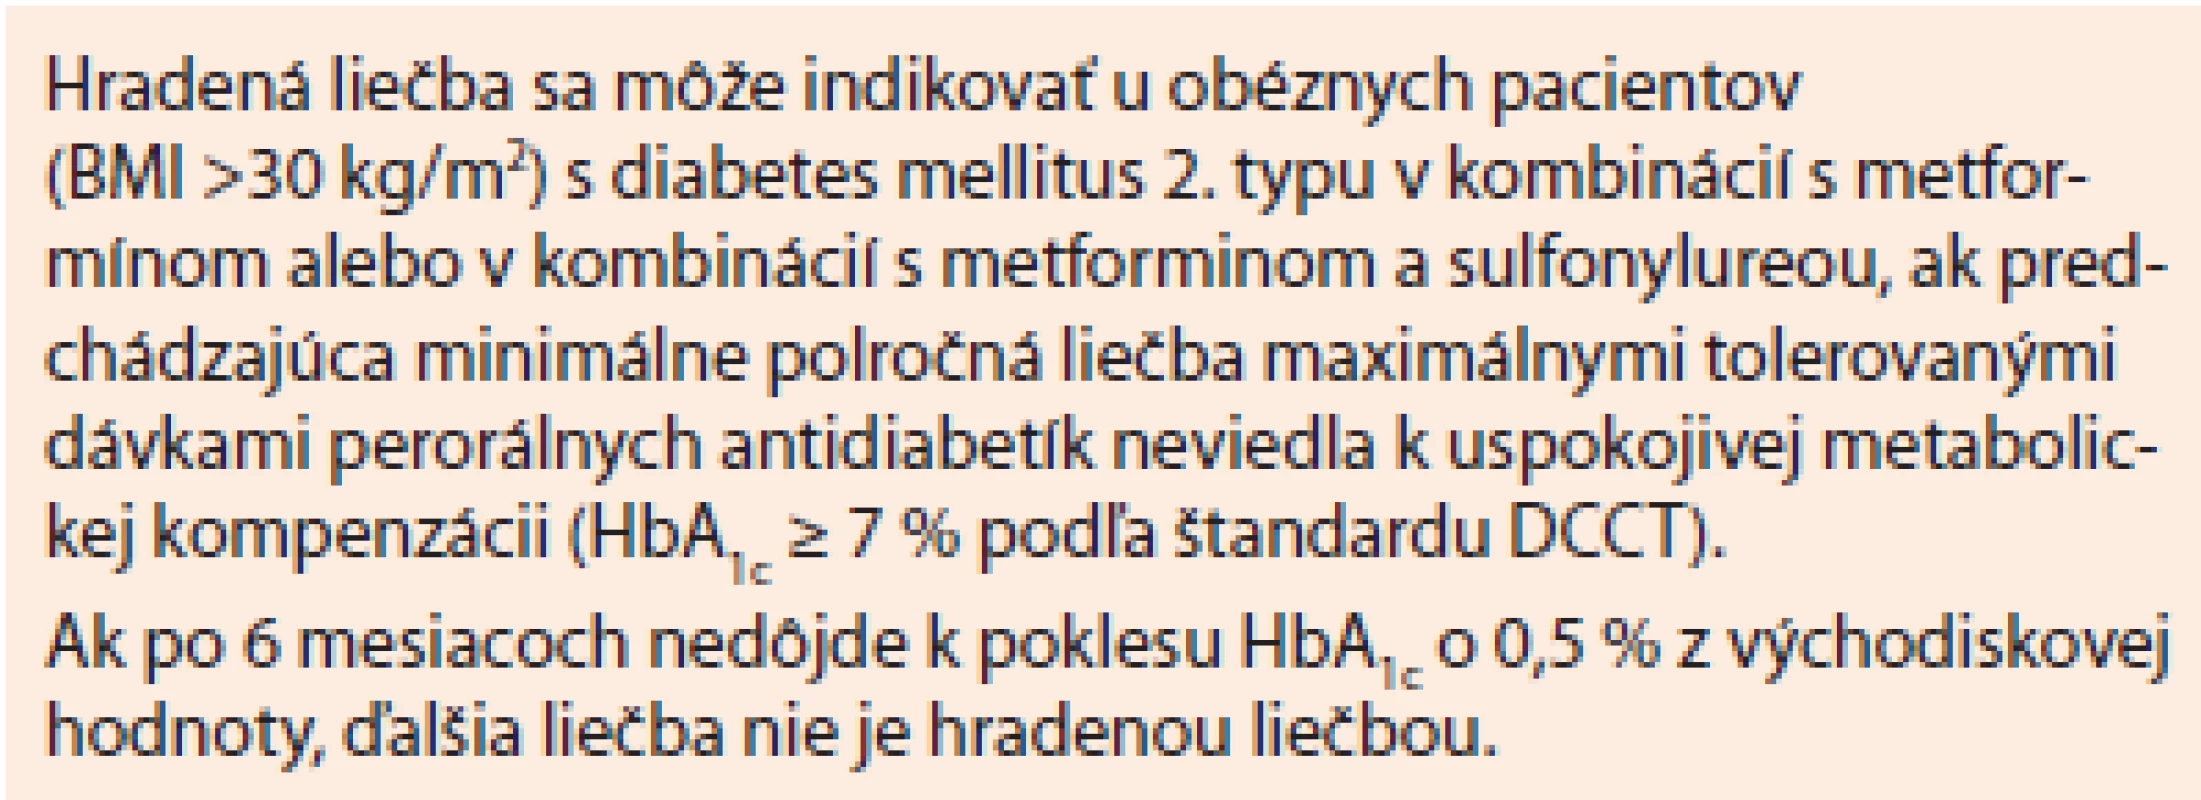 Lixisenatid. Indikačné obmedzenie platné od 1. 6. 2014